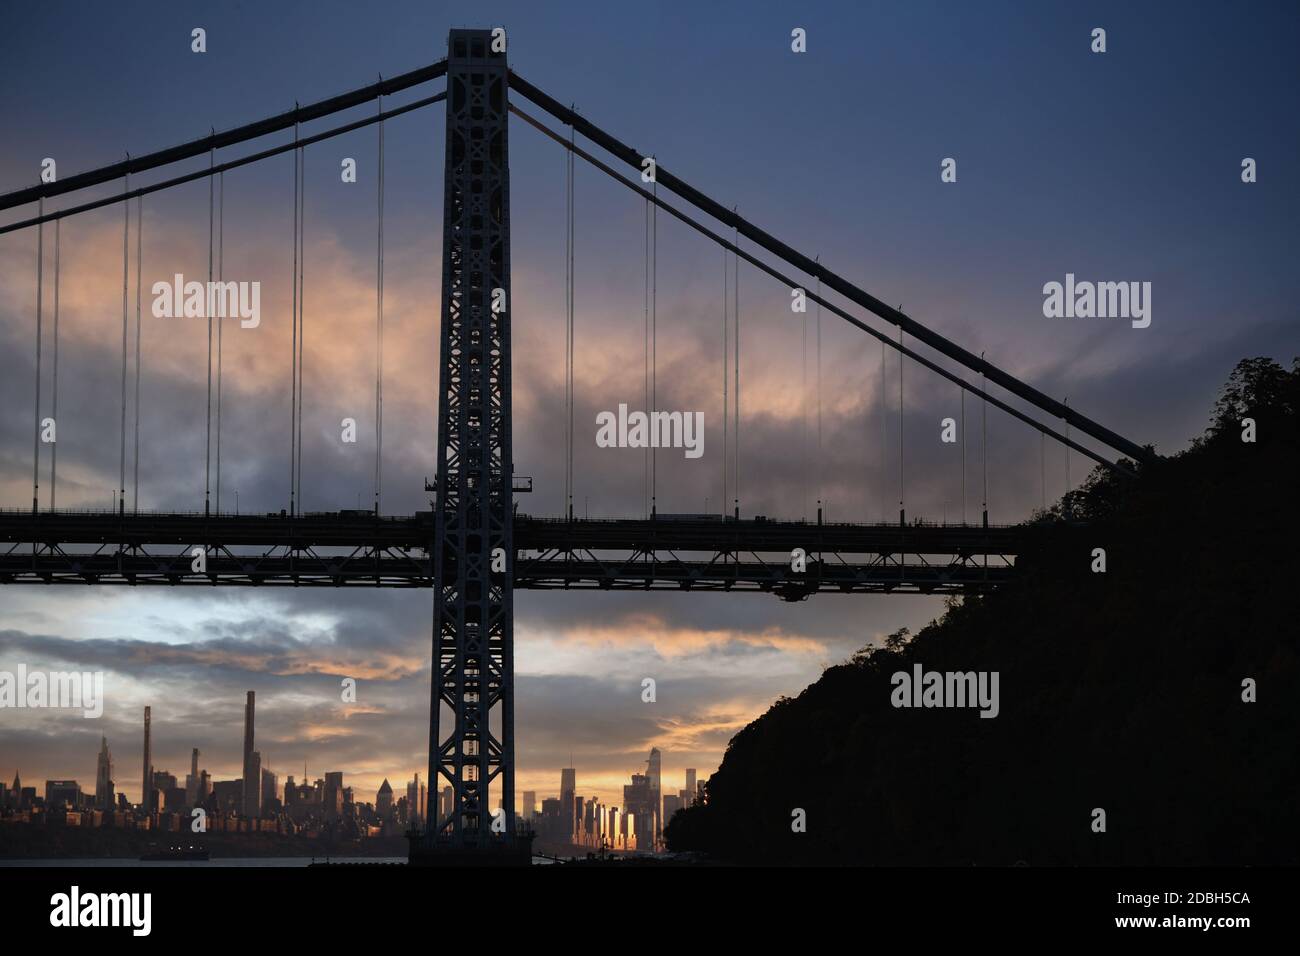 CORTINA D'ACCIAIO: VOLUME 2: Il George Washington Bridge è la stella di molti splendidi paesaggi sopraelevati lungo il fiume Hudson, nelle Palisades of NJ Foto Stock